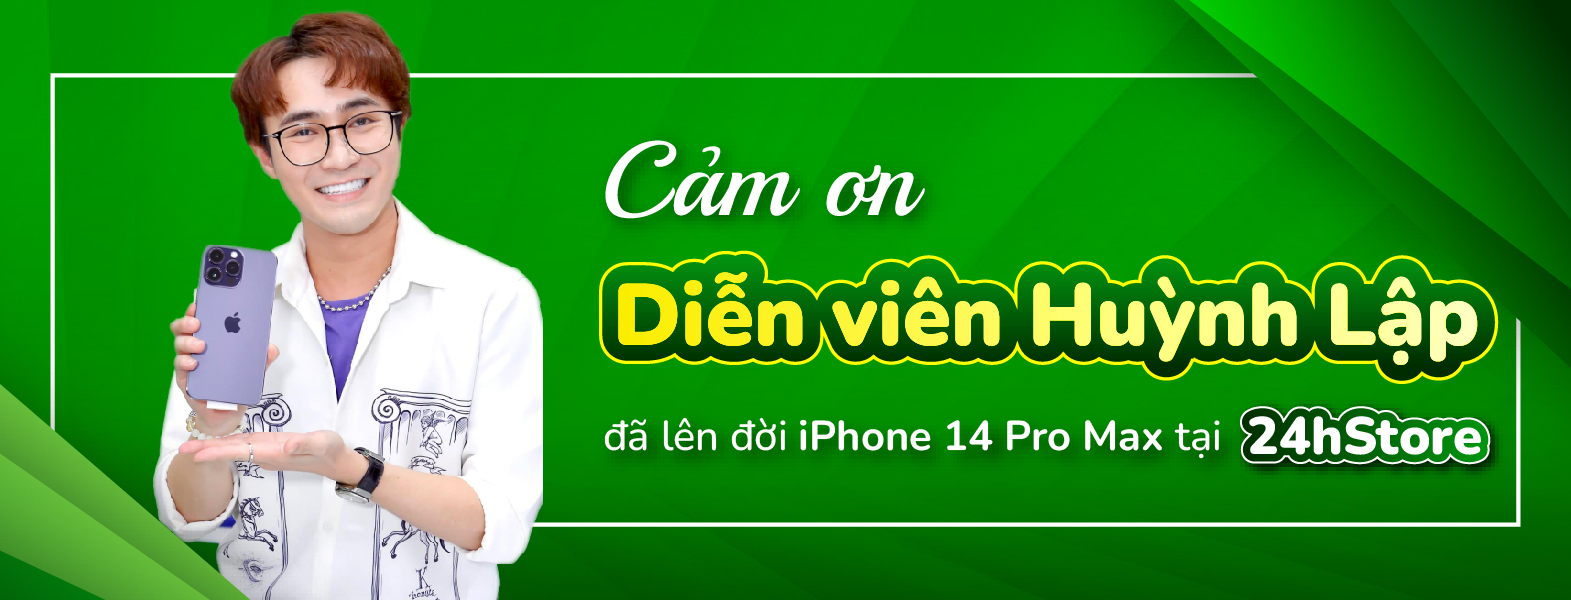 Diễn viên Huỳnh Lập lên đời siêu phẩm iPhone 14 Pro Max